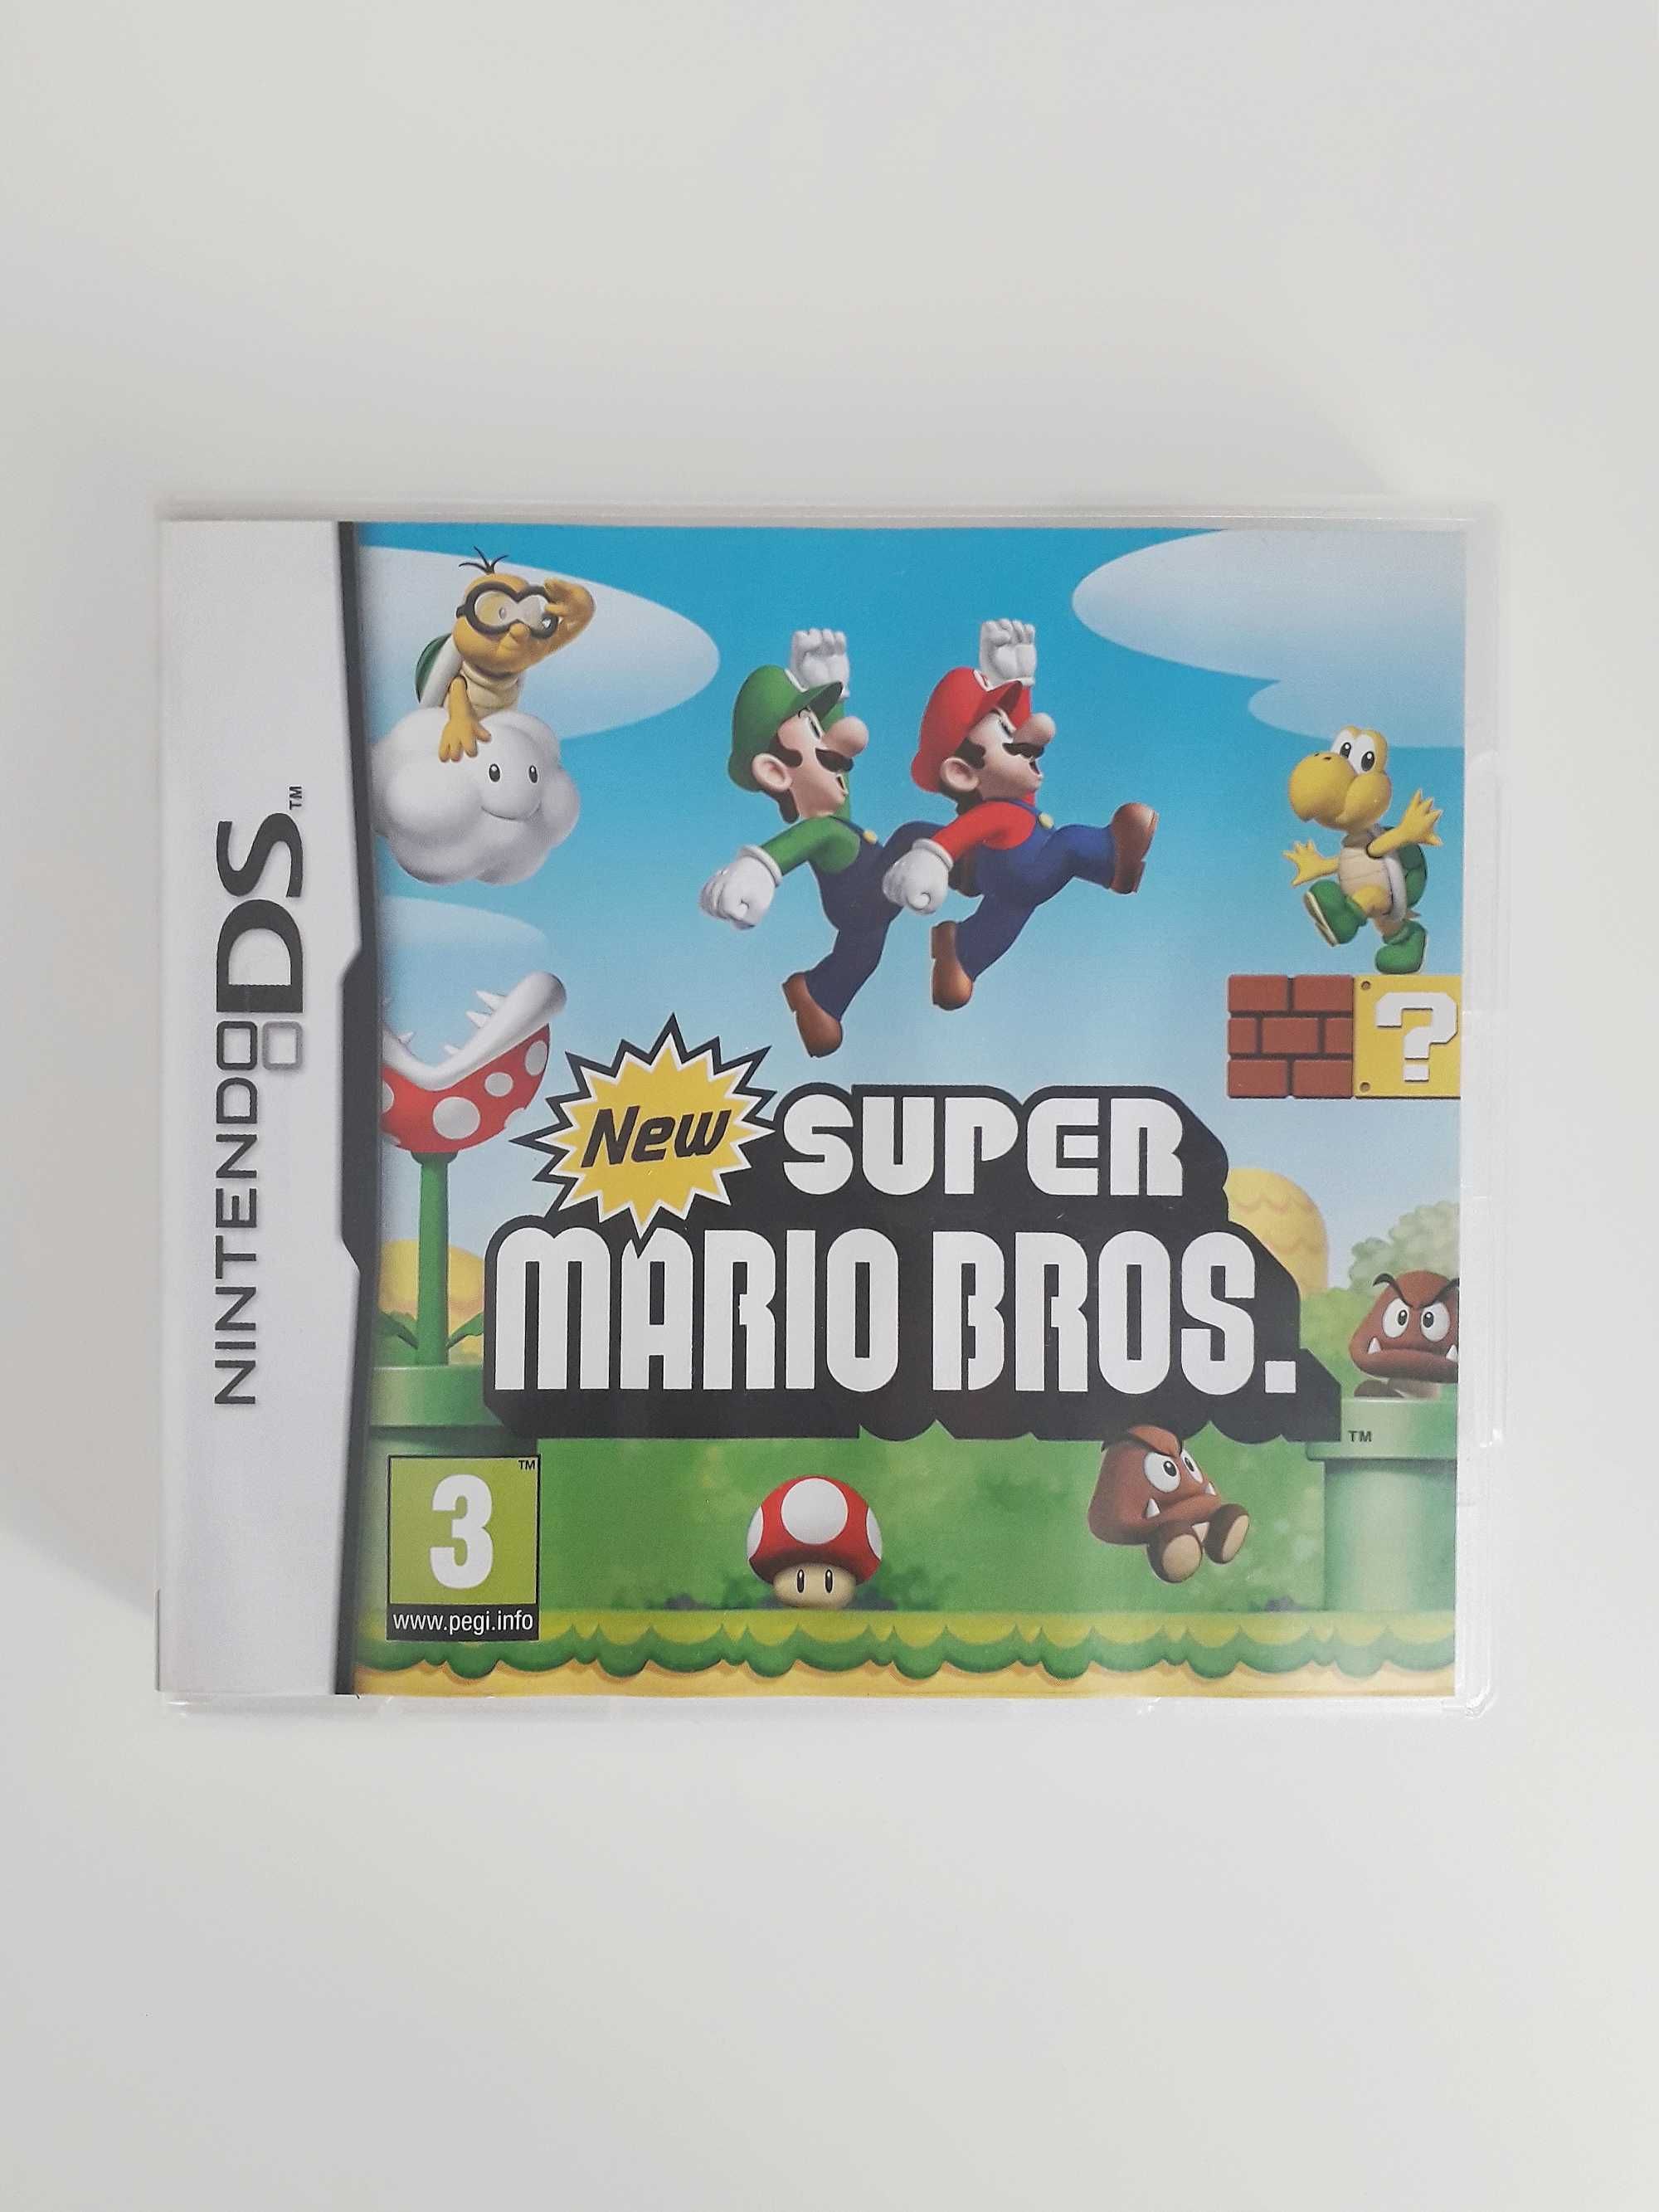 Nintendo Dsi XL – Super Mario Bros 25th Anniversary Special Edition